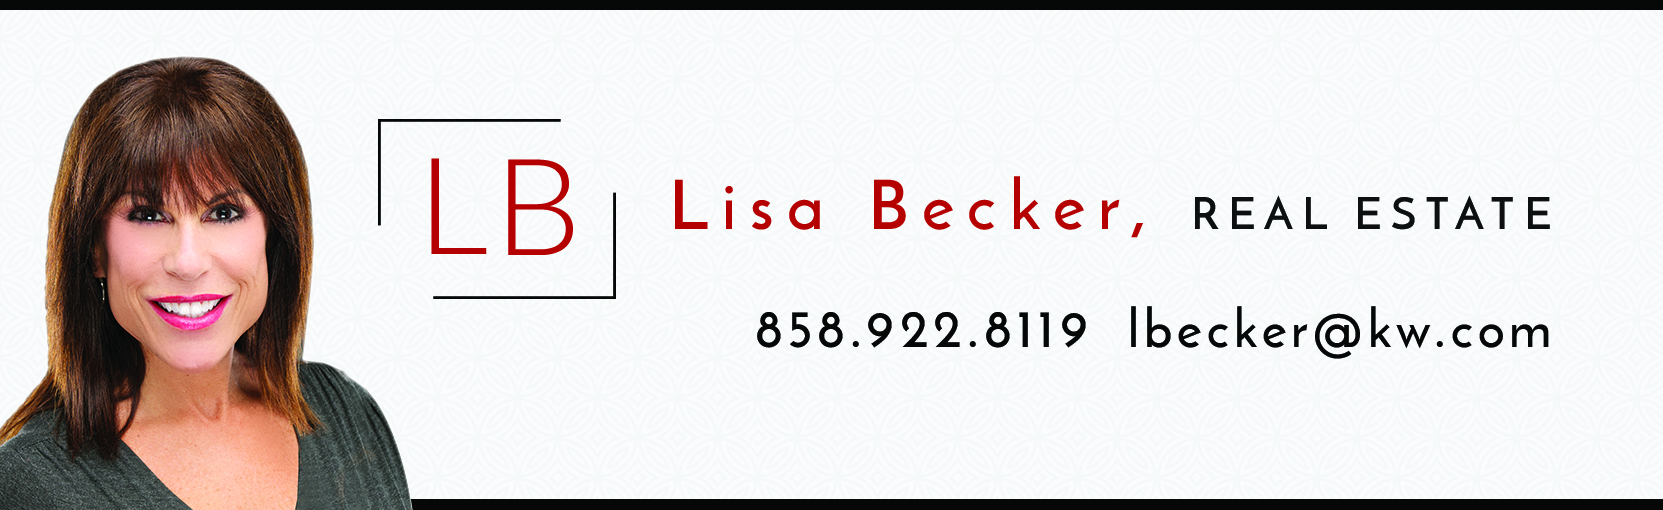 Meet Lisa Becker